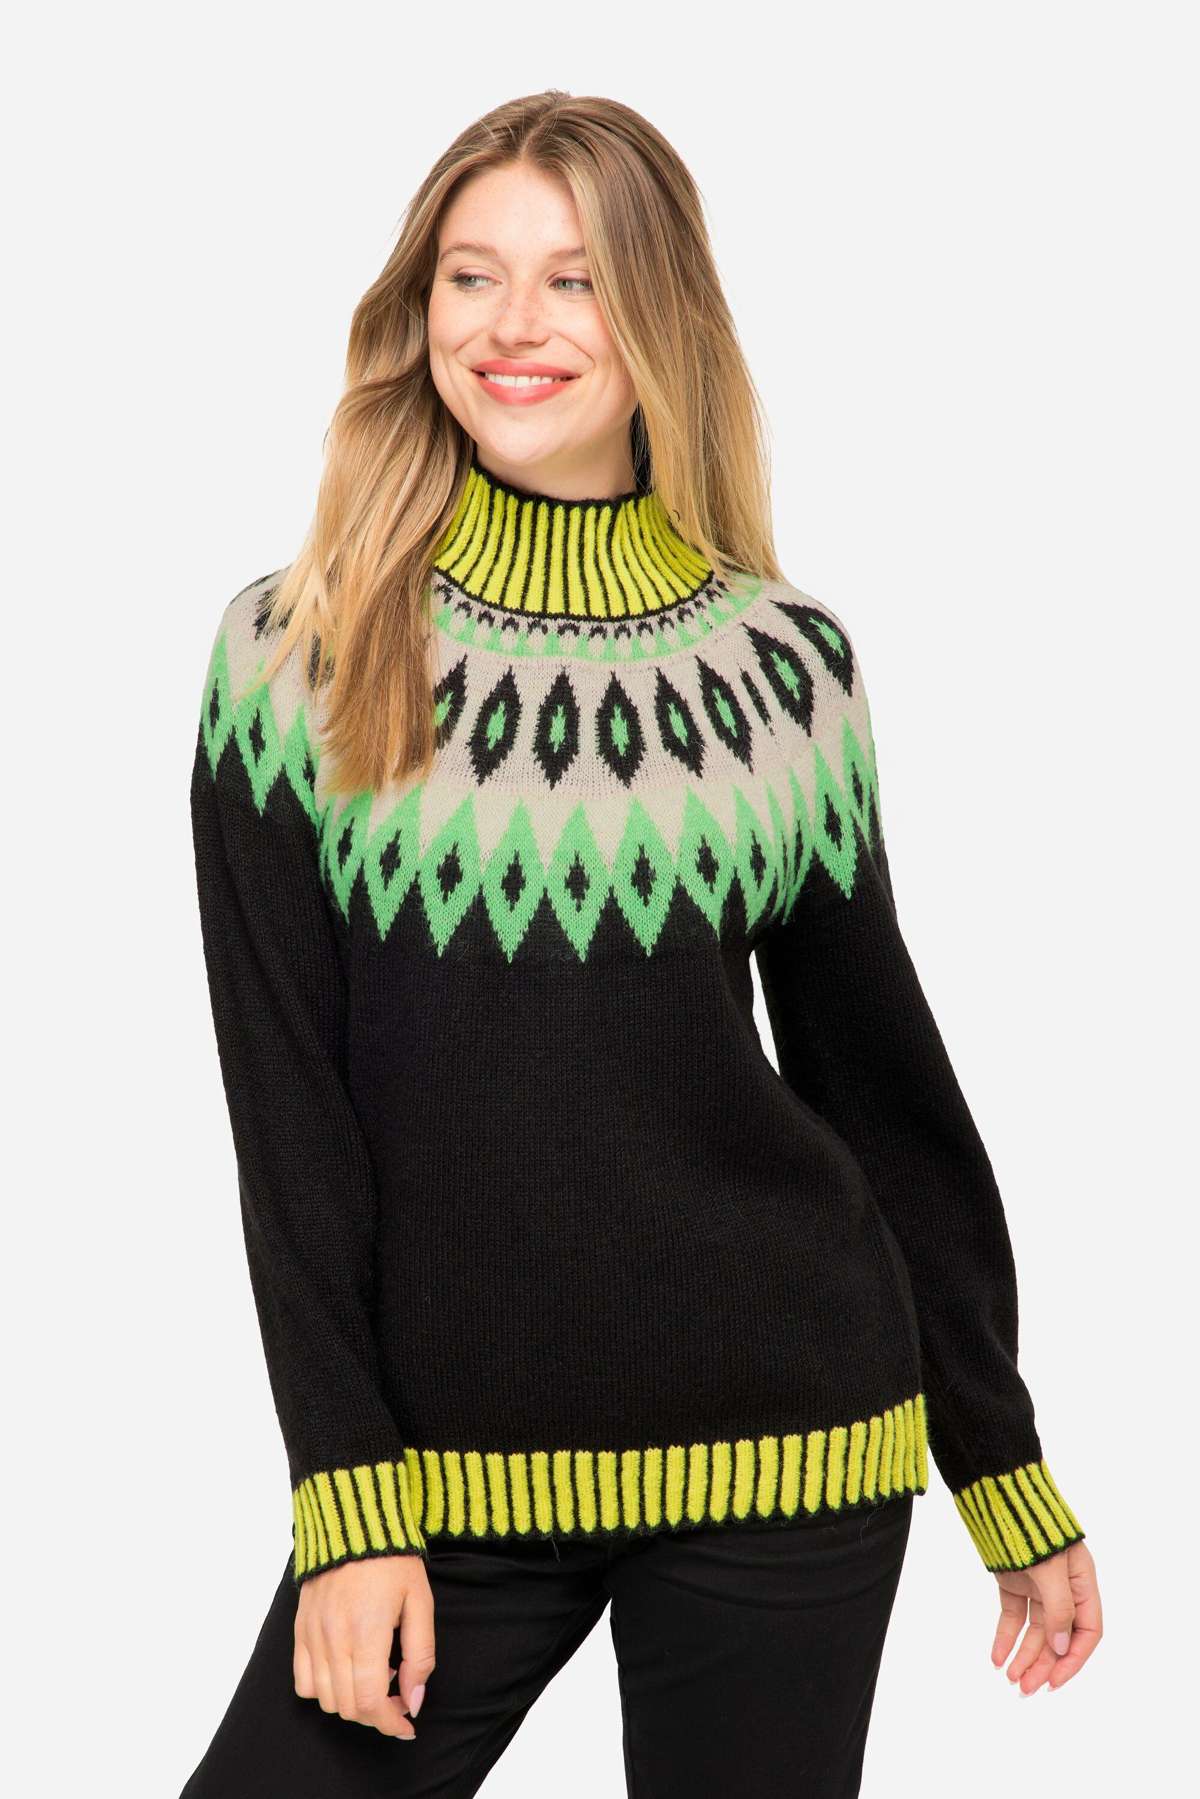 Вязаный свитер, норвежский свитер, содержание шерсти, воротник стойка, длинный рукав.